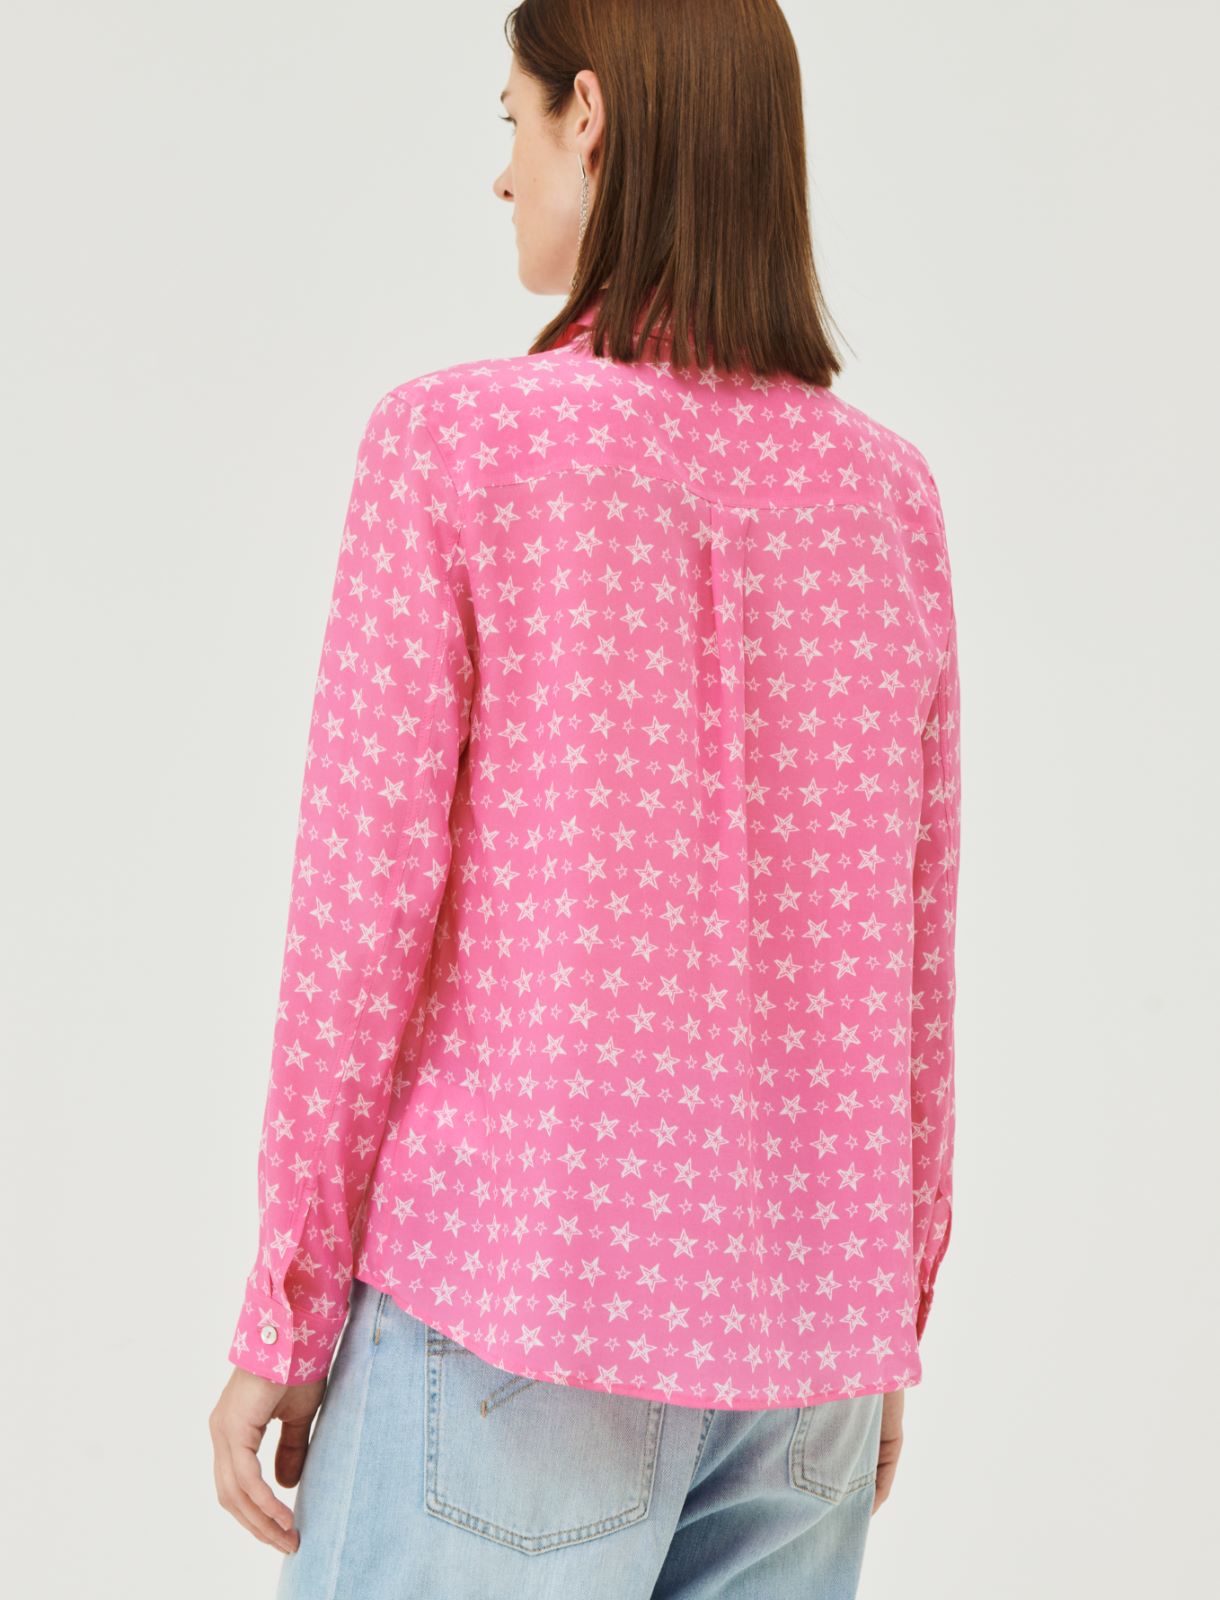 Patterned shirt - Shocking pink - Marella - 2